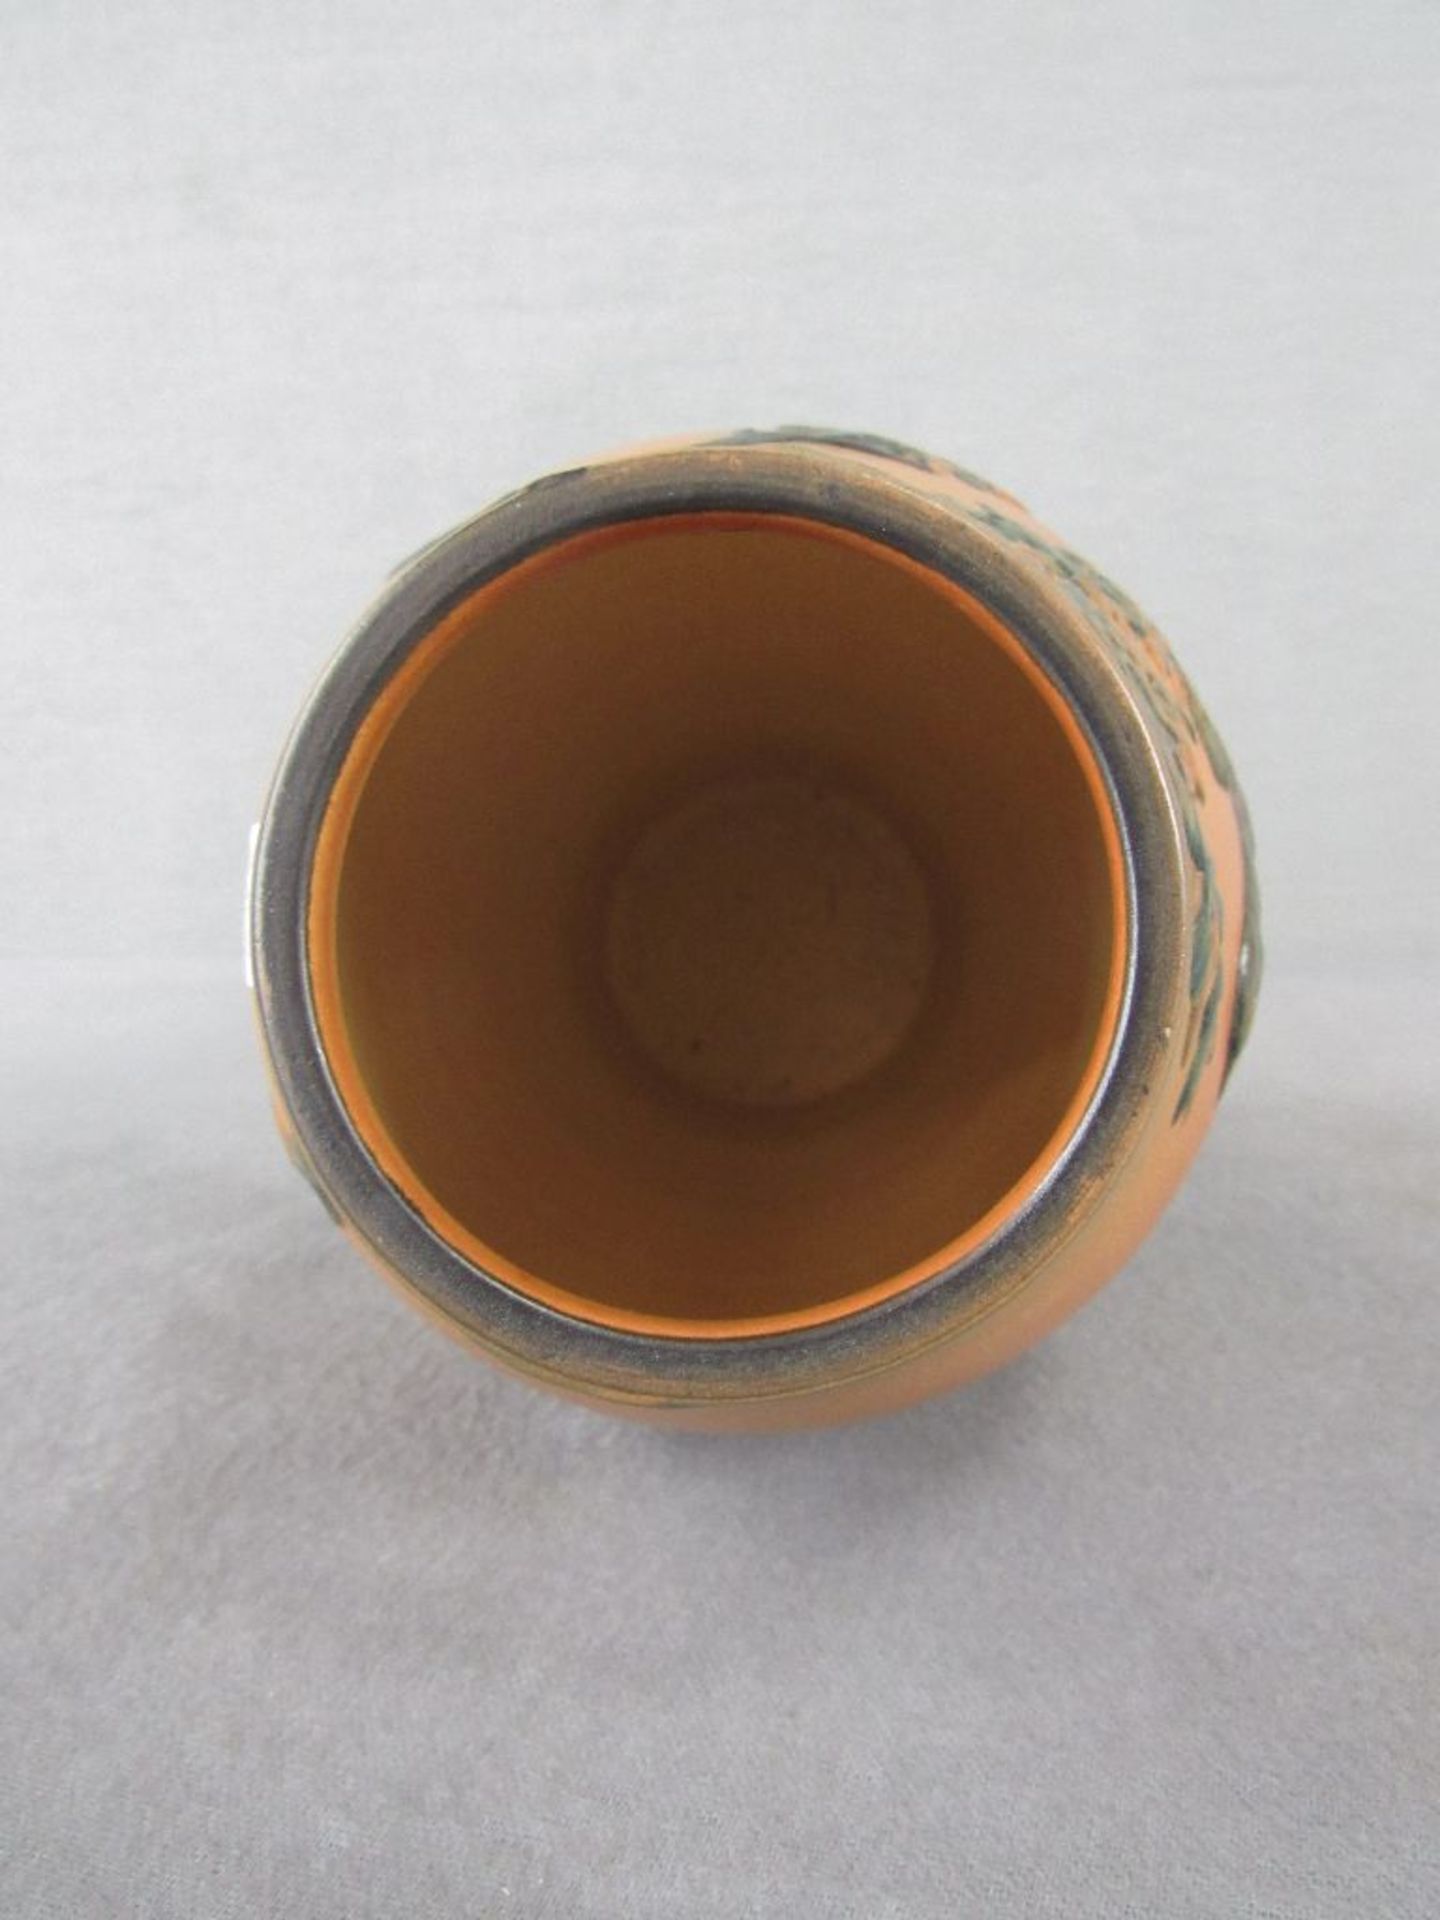 Vase Keramik Jugendstil Enke Ypsen Dänemark gemarkt 22cm hoch am Stand leicht gechipt - Bild 4 aus 6